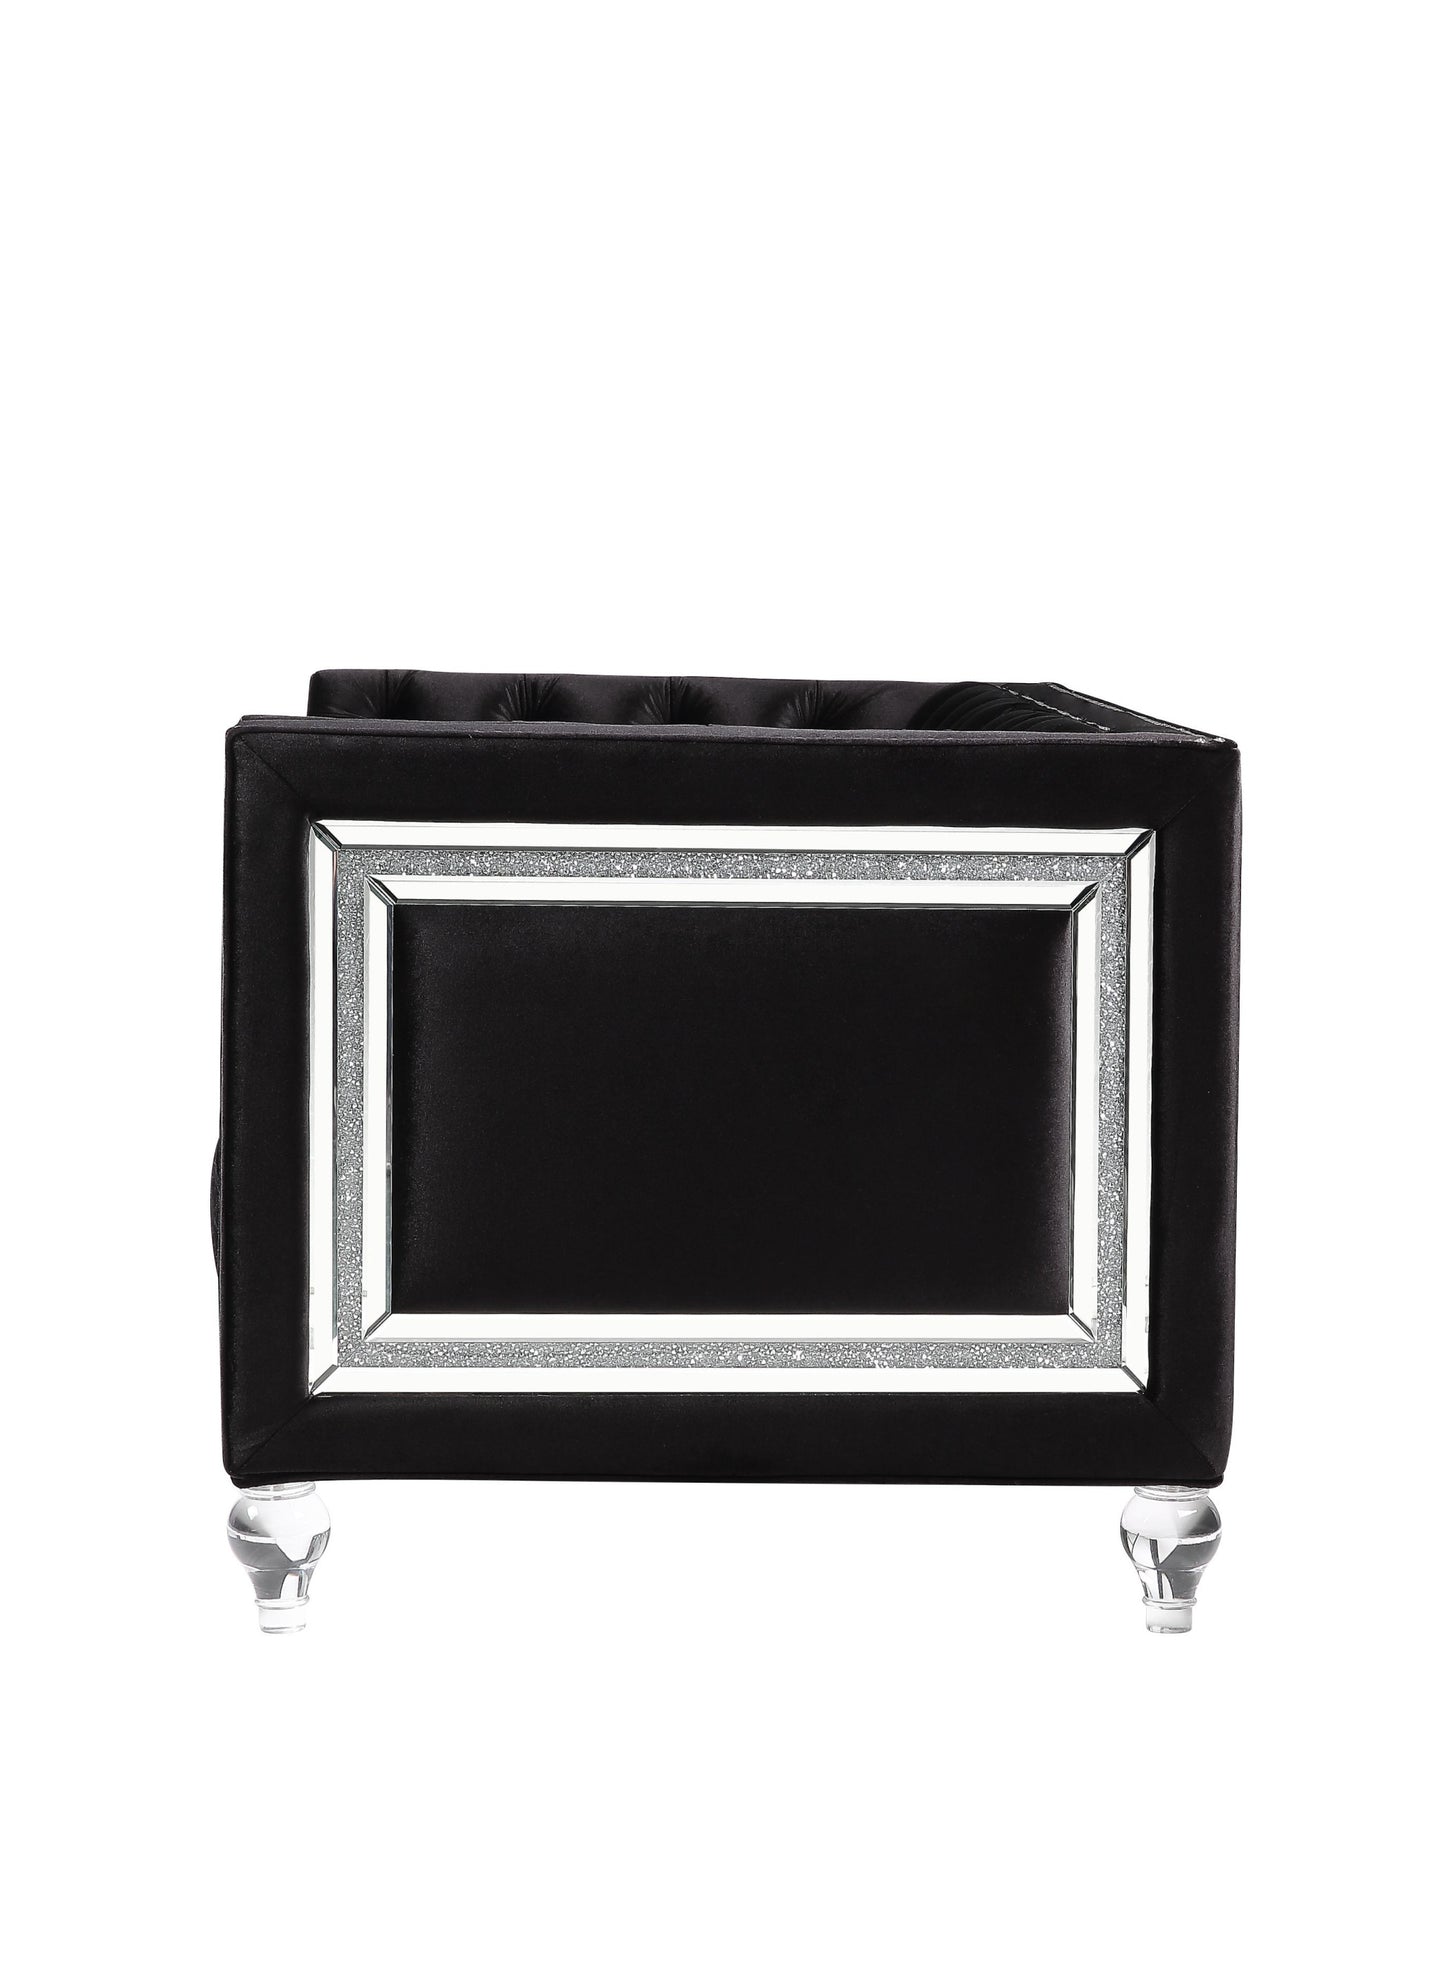 40" Black Velvet Tufted Arm Chair